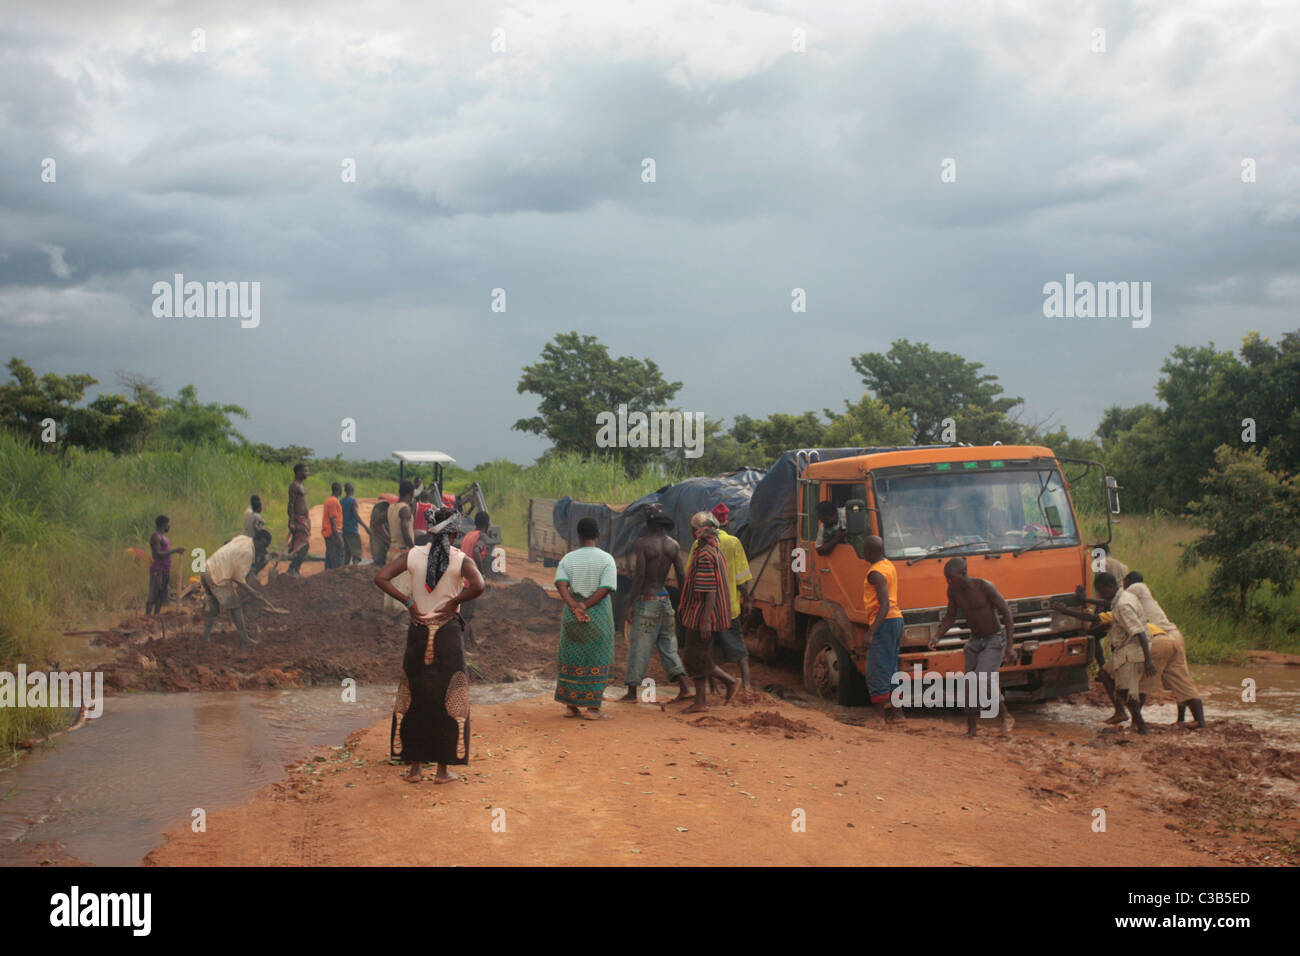 Eine gesperrte Straße im abgelegenen Norden Mosambiks. Alle gechipt das Loch füllen und dann fuhr fort! Stockfoto